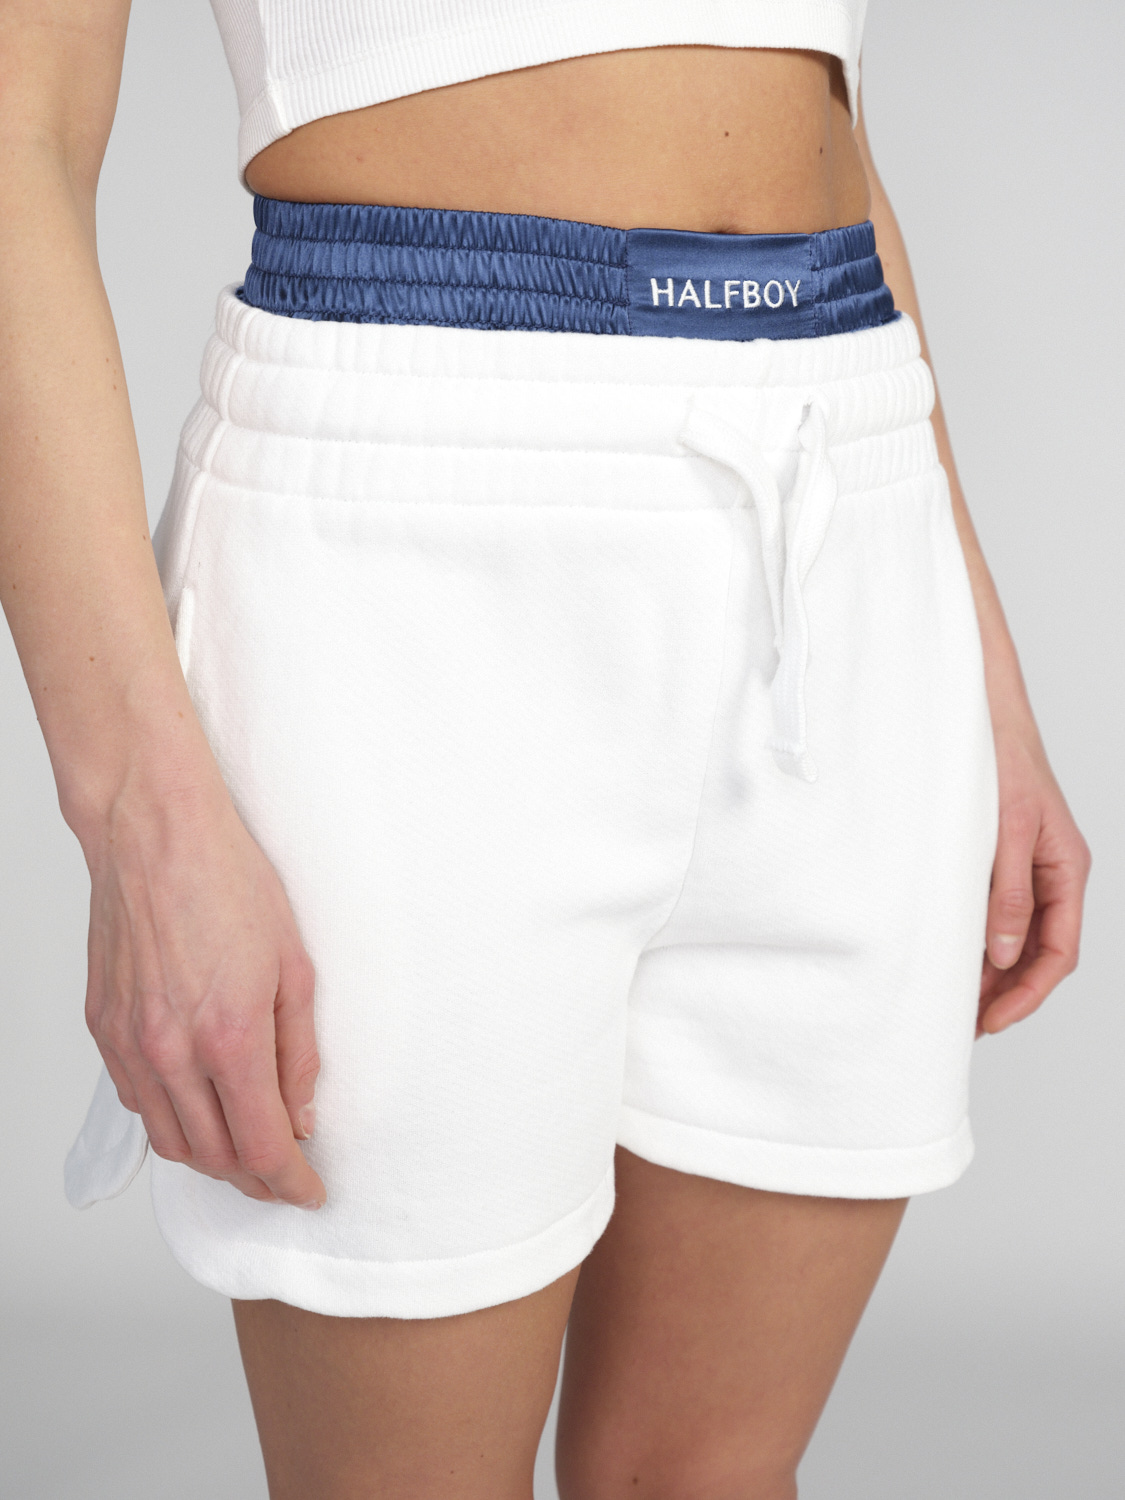 Halfboy With Boxer – Baumwoll-Shorts mit Boxer-Detail  weiß S